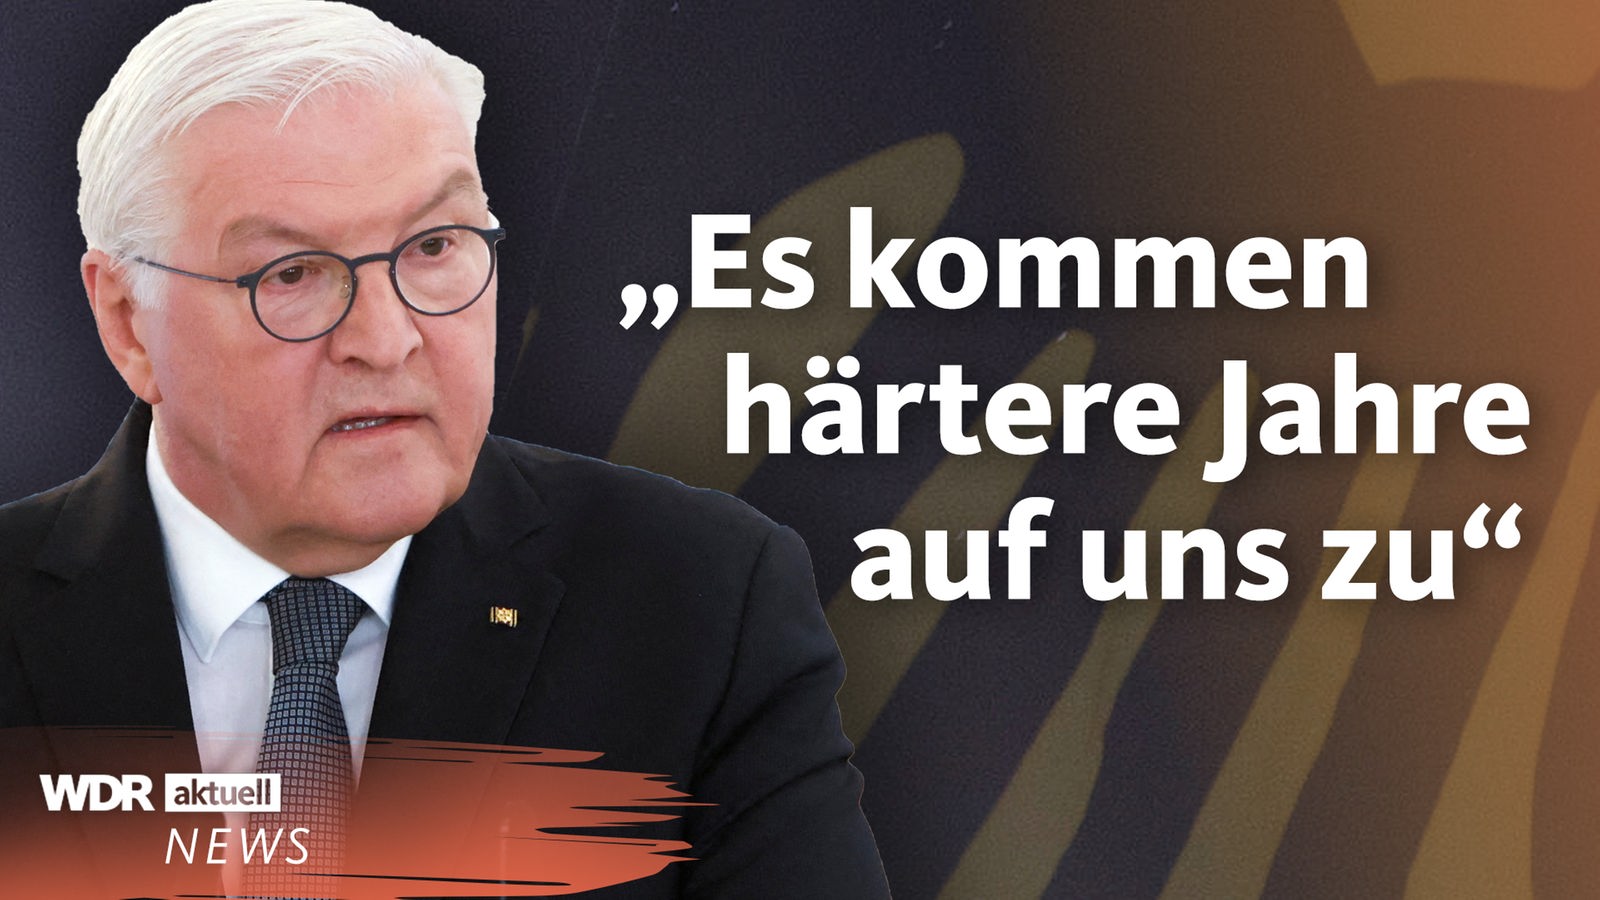 Bundespräsident Steinmeier wirbt Zusammenhalt in der Krise - Nachrichten - WDR